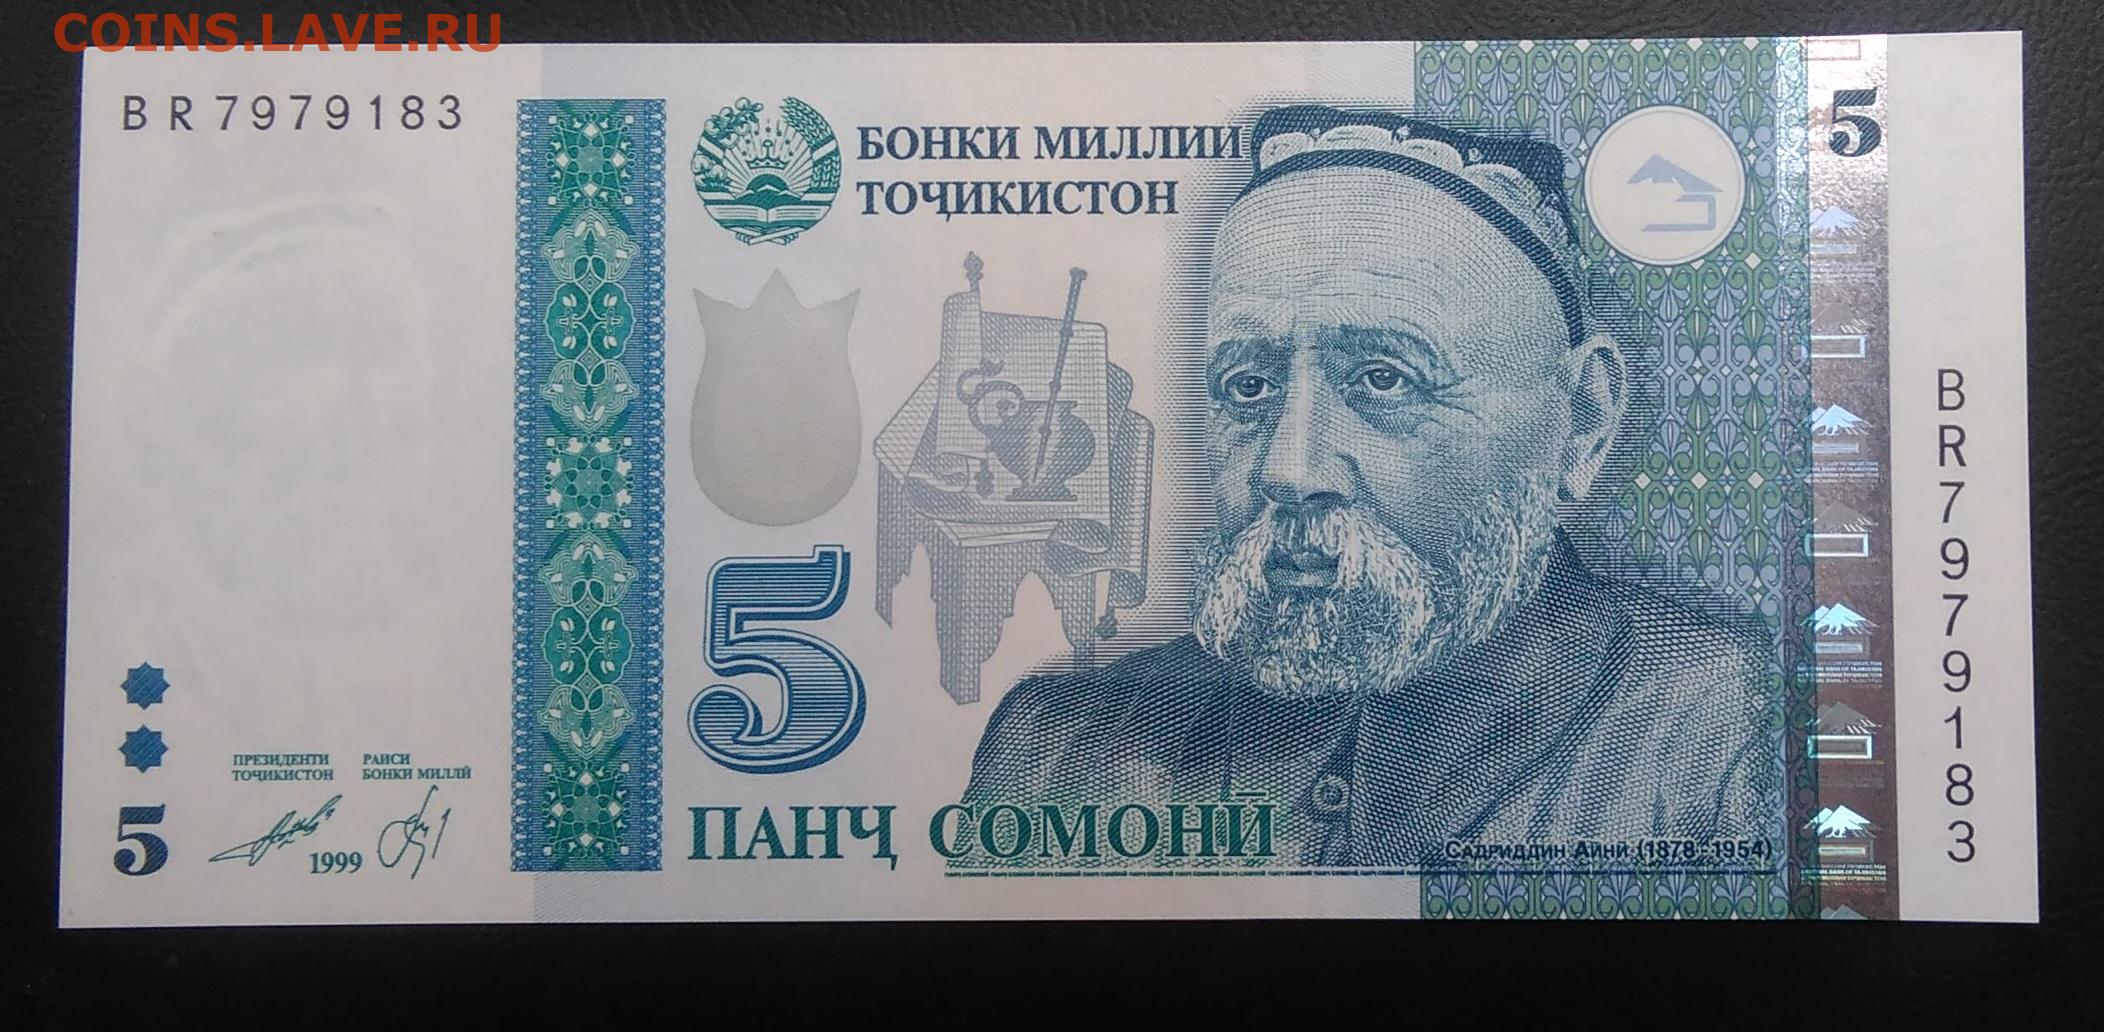 Сум таджикистан. 5 Сомони 1999 Таджикистан. Банкноты Таджикистана: 5 Сомони. Купюры Таджикистана 1000 Сомони. Банкнота 10 Сомони 1999 год Таджикистан.